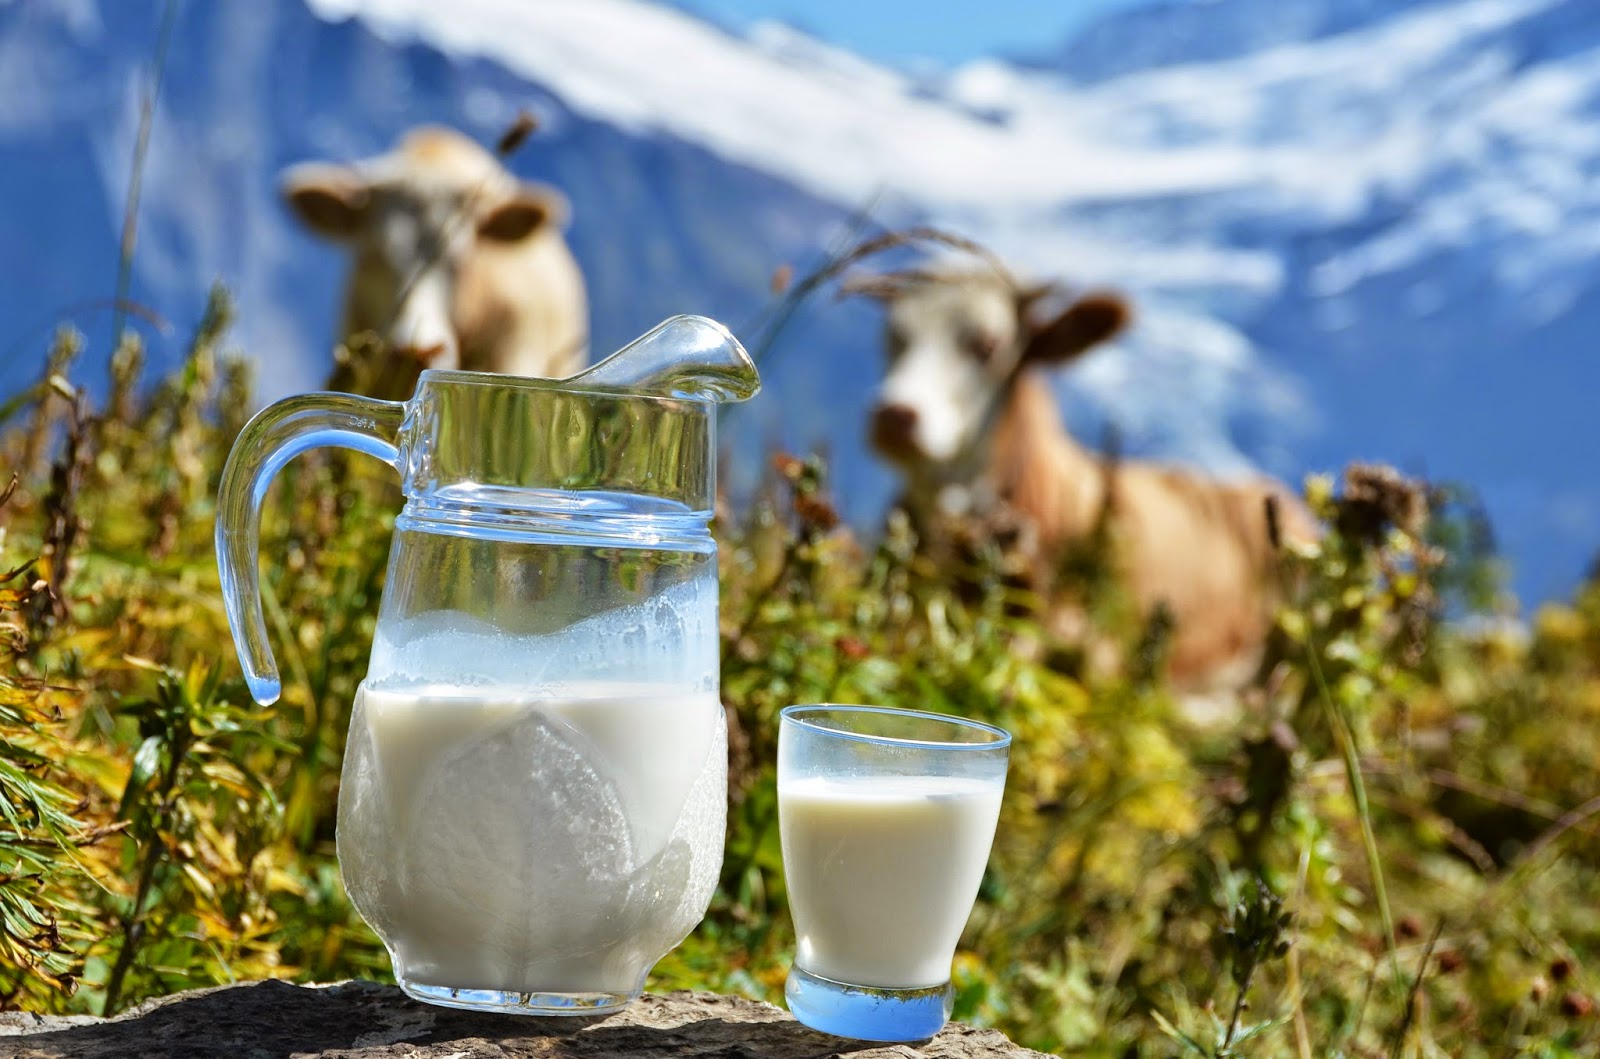 Производители предпочитают держать коров не для мяса, а для молока - аналитики Pro-Consulting. Сегодня